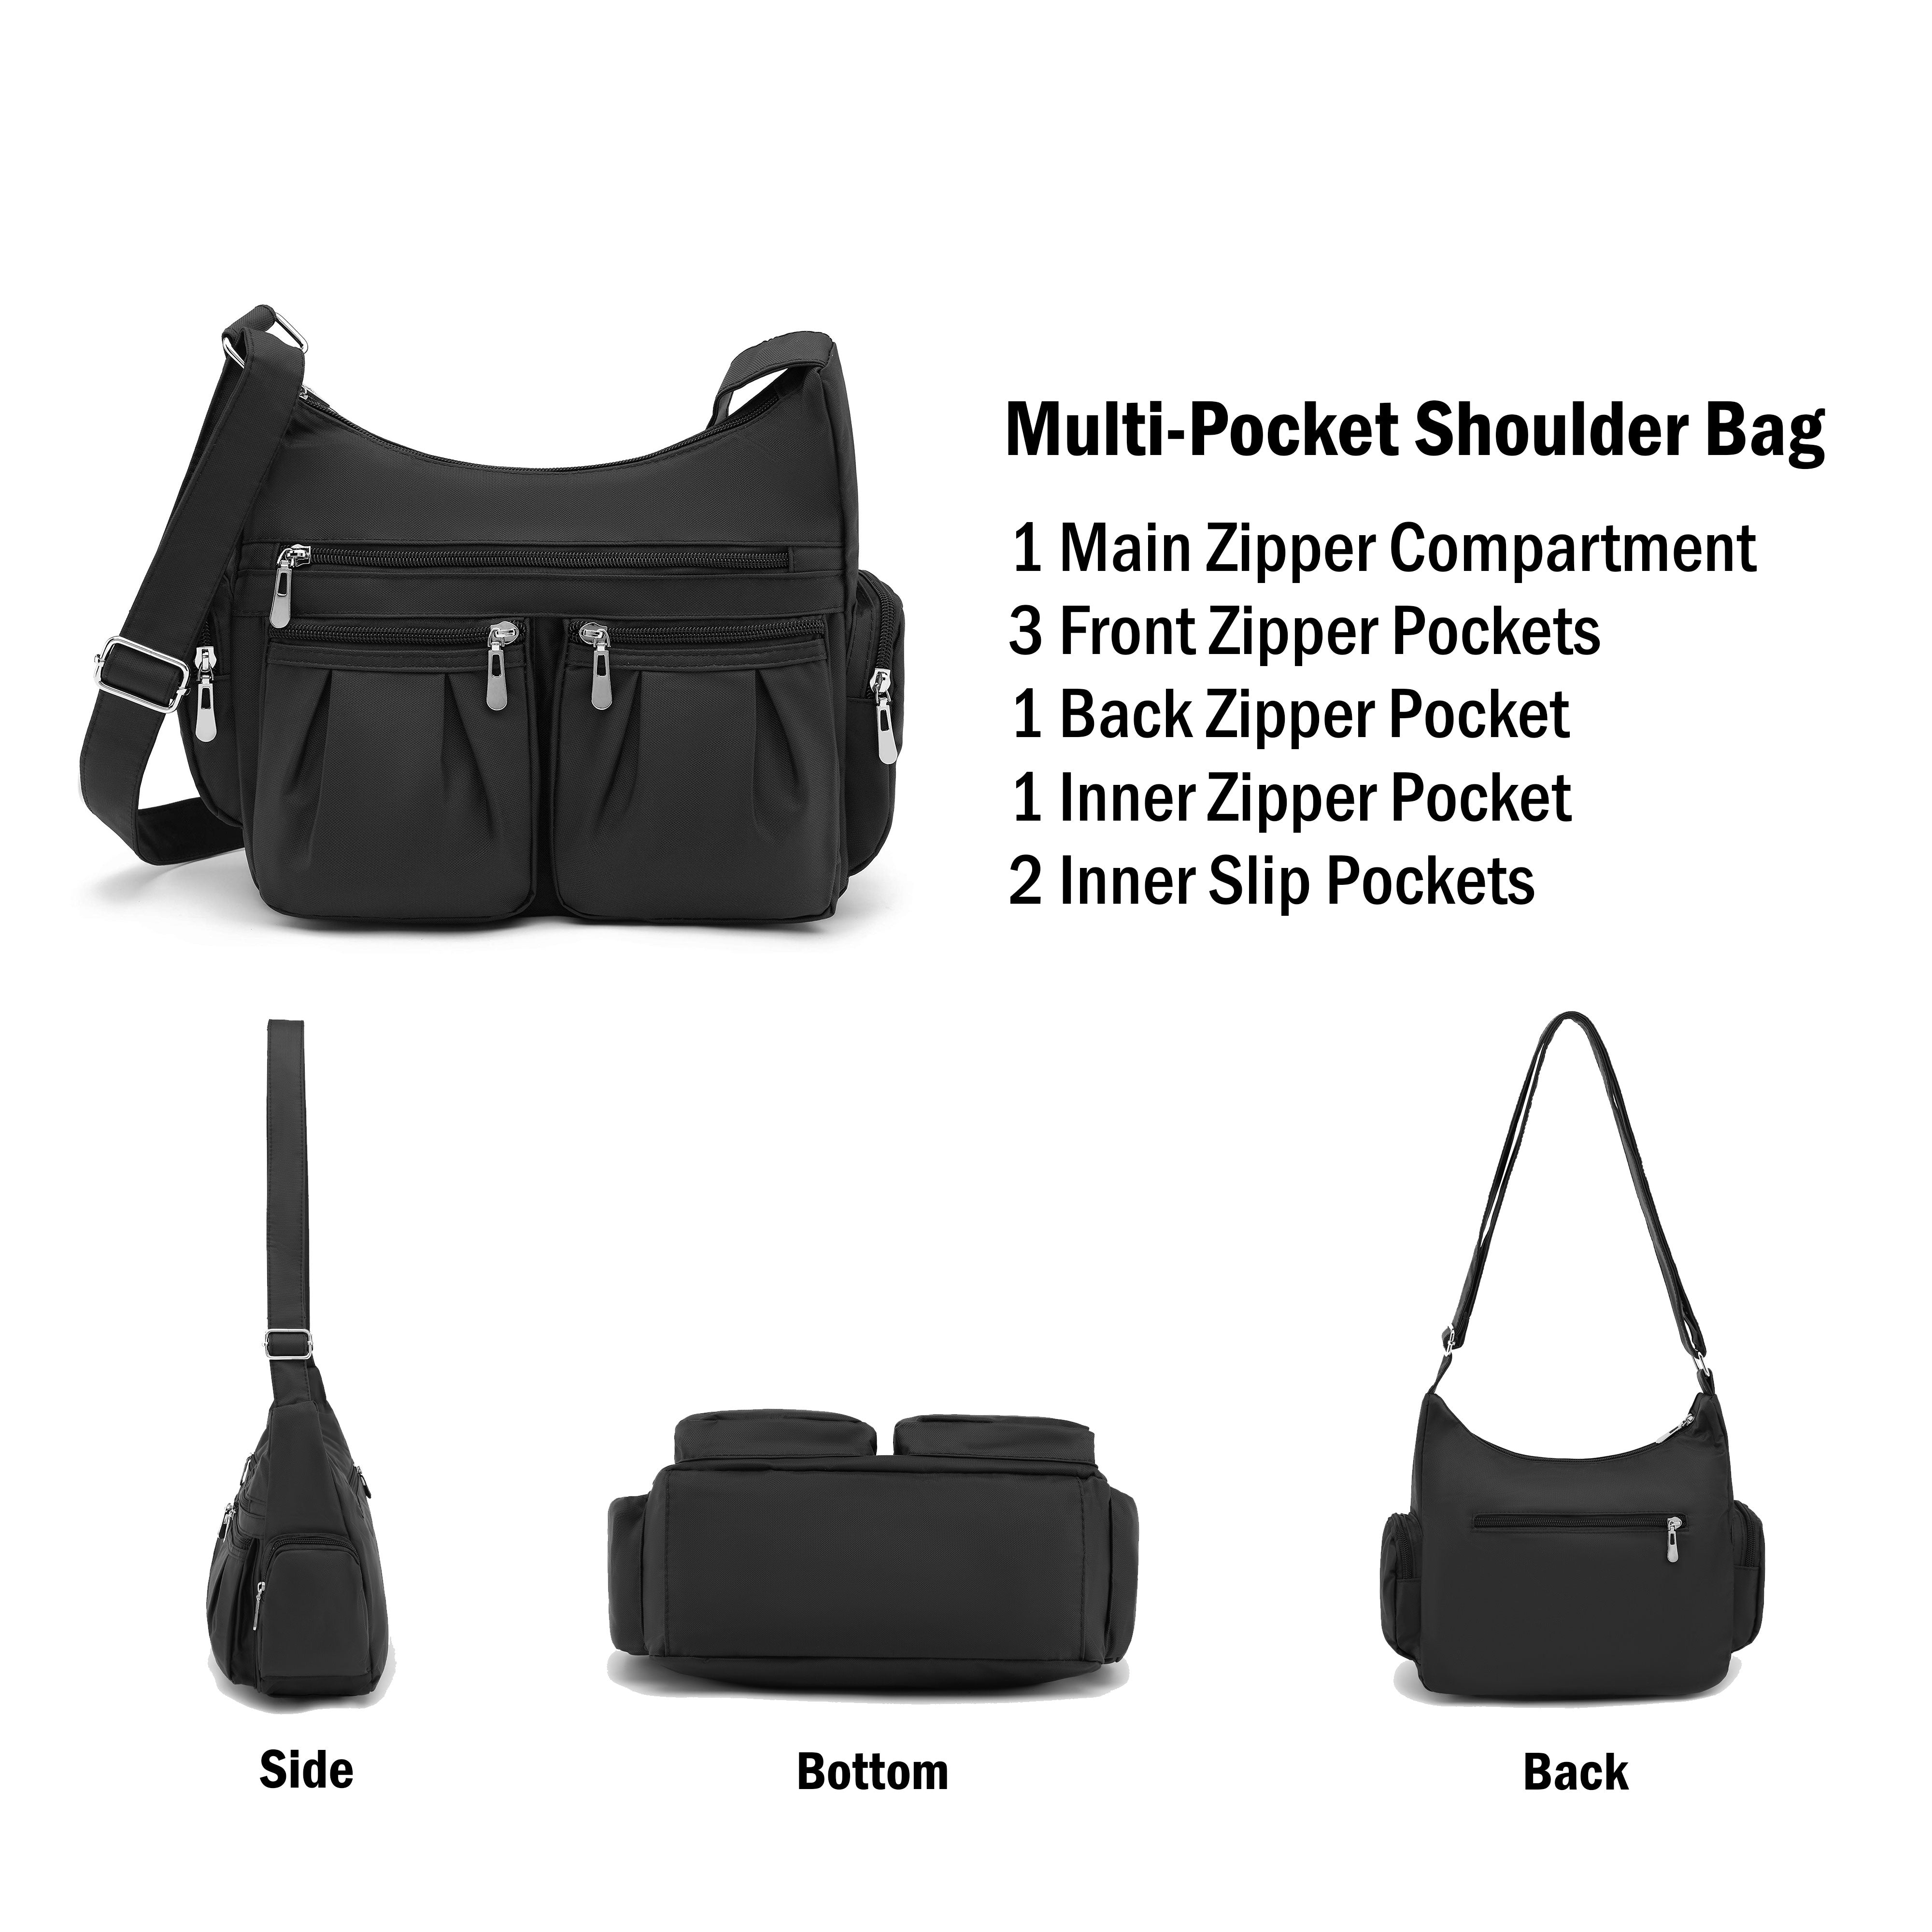 Multi-pocket bag strap